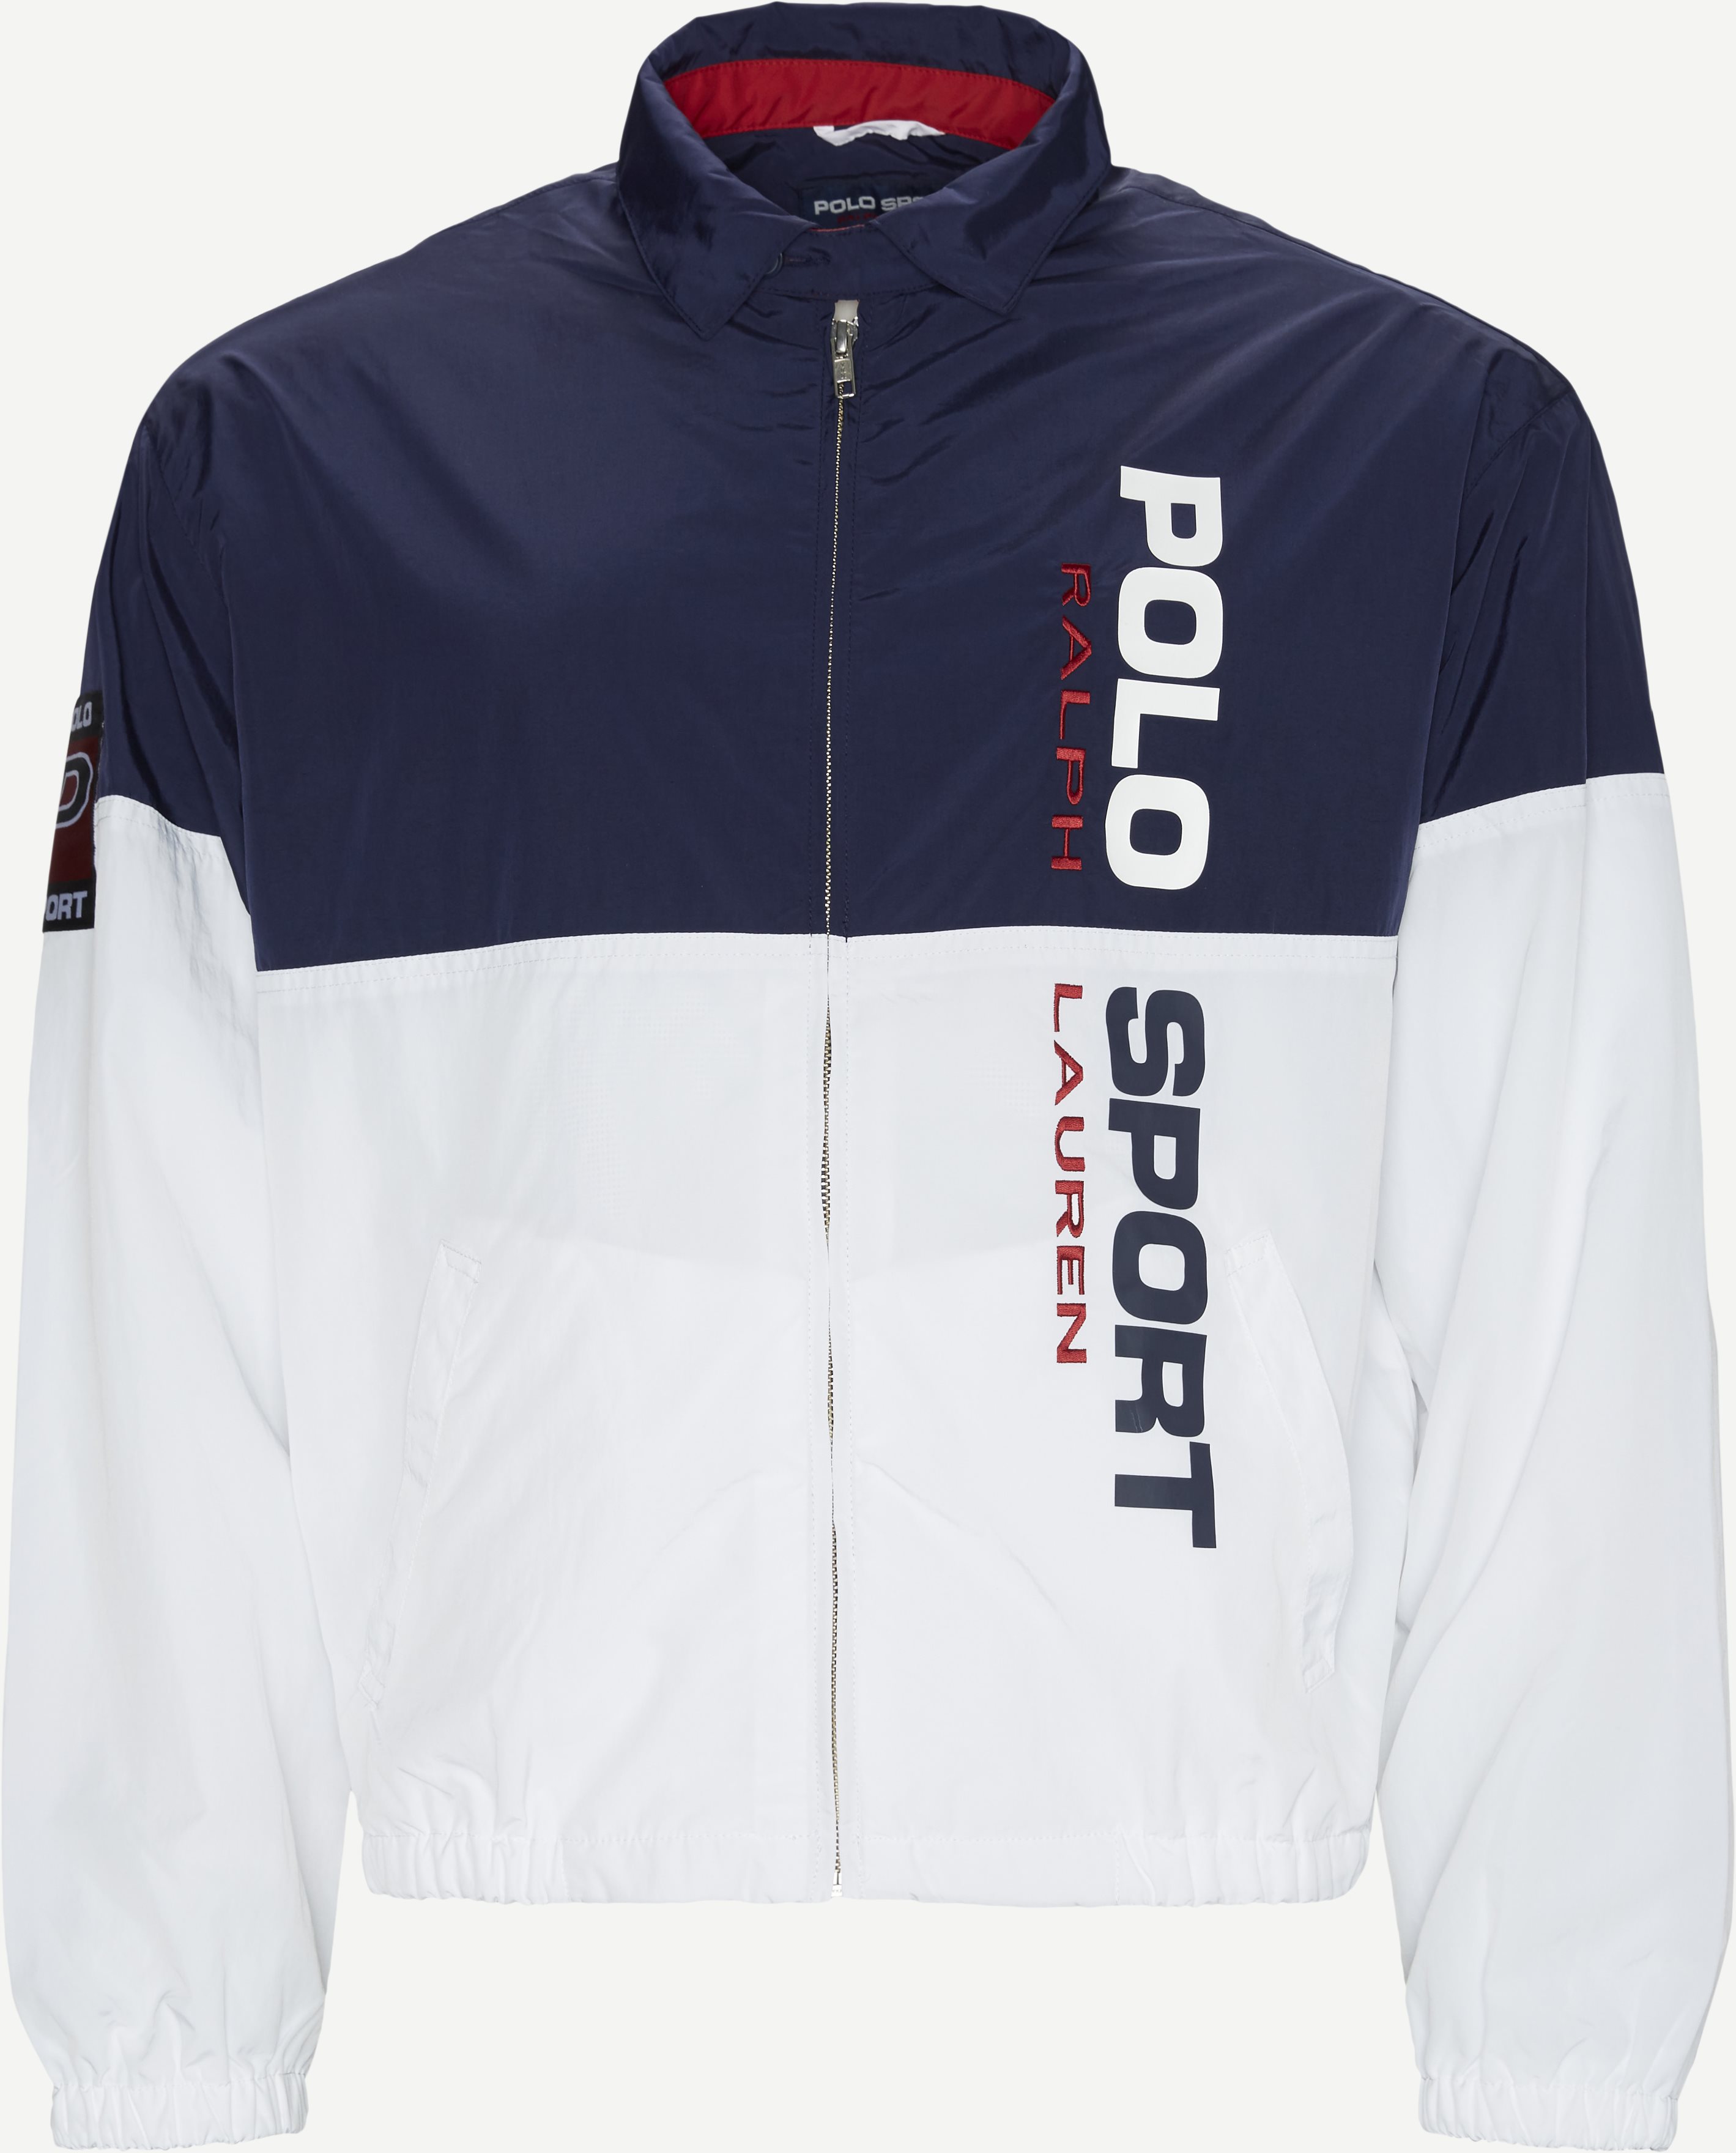 Polo Sport Windbreaker - Jackets - Regular fit - Blue